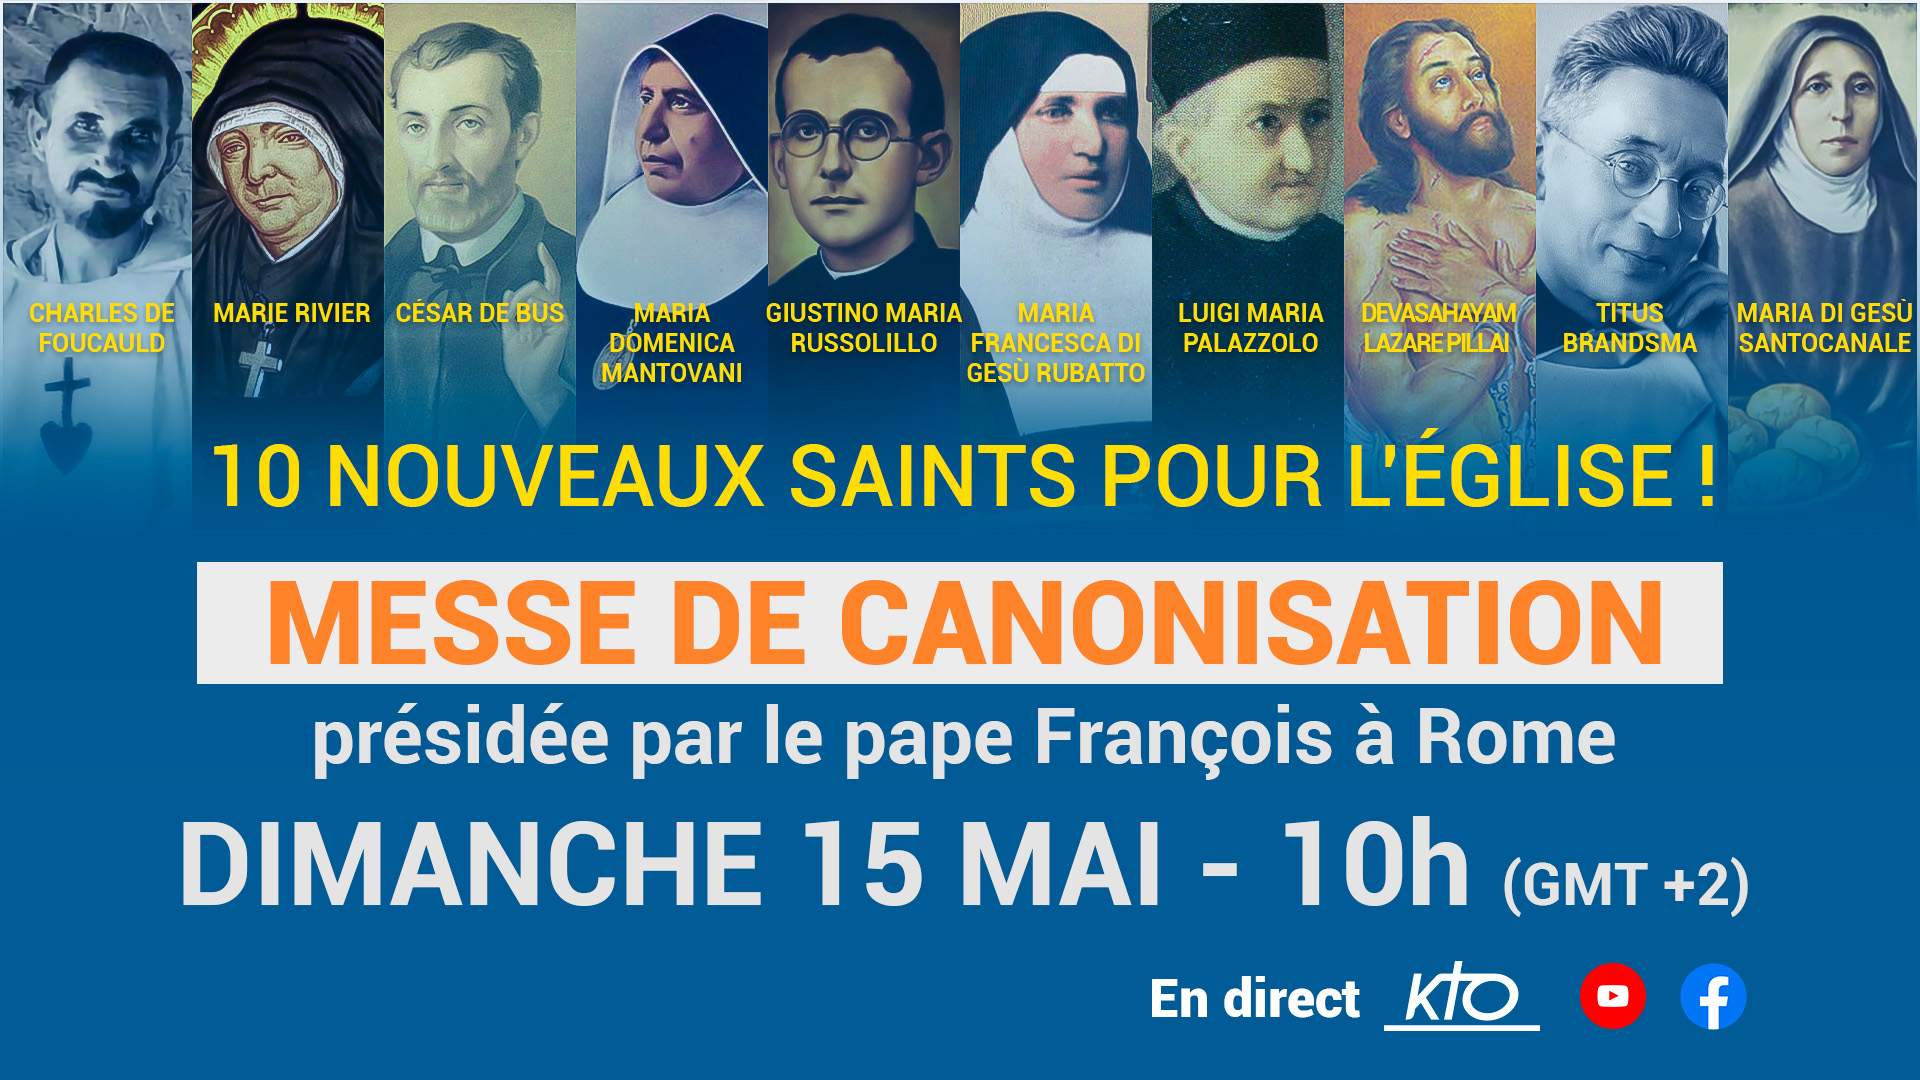 15 mai 2022 : Canonisations de Charles de Foucauld, Marie Rivier et César de Bus. 0515%20CANONISATION_VISUEL_YT